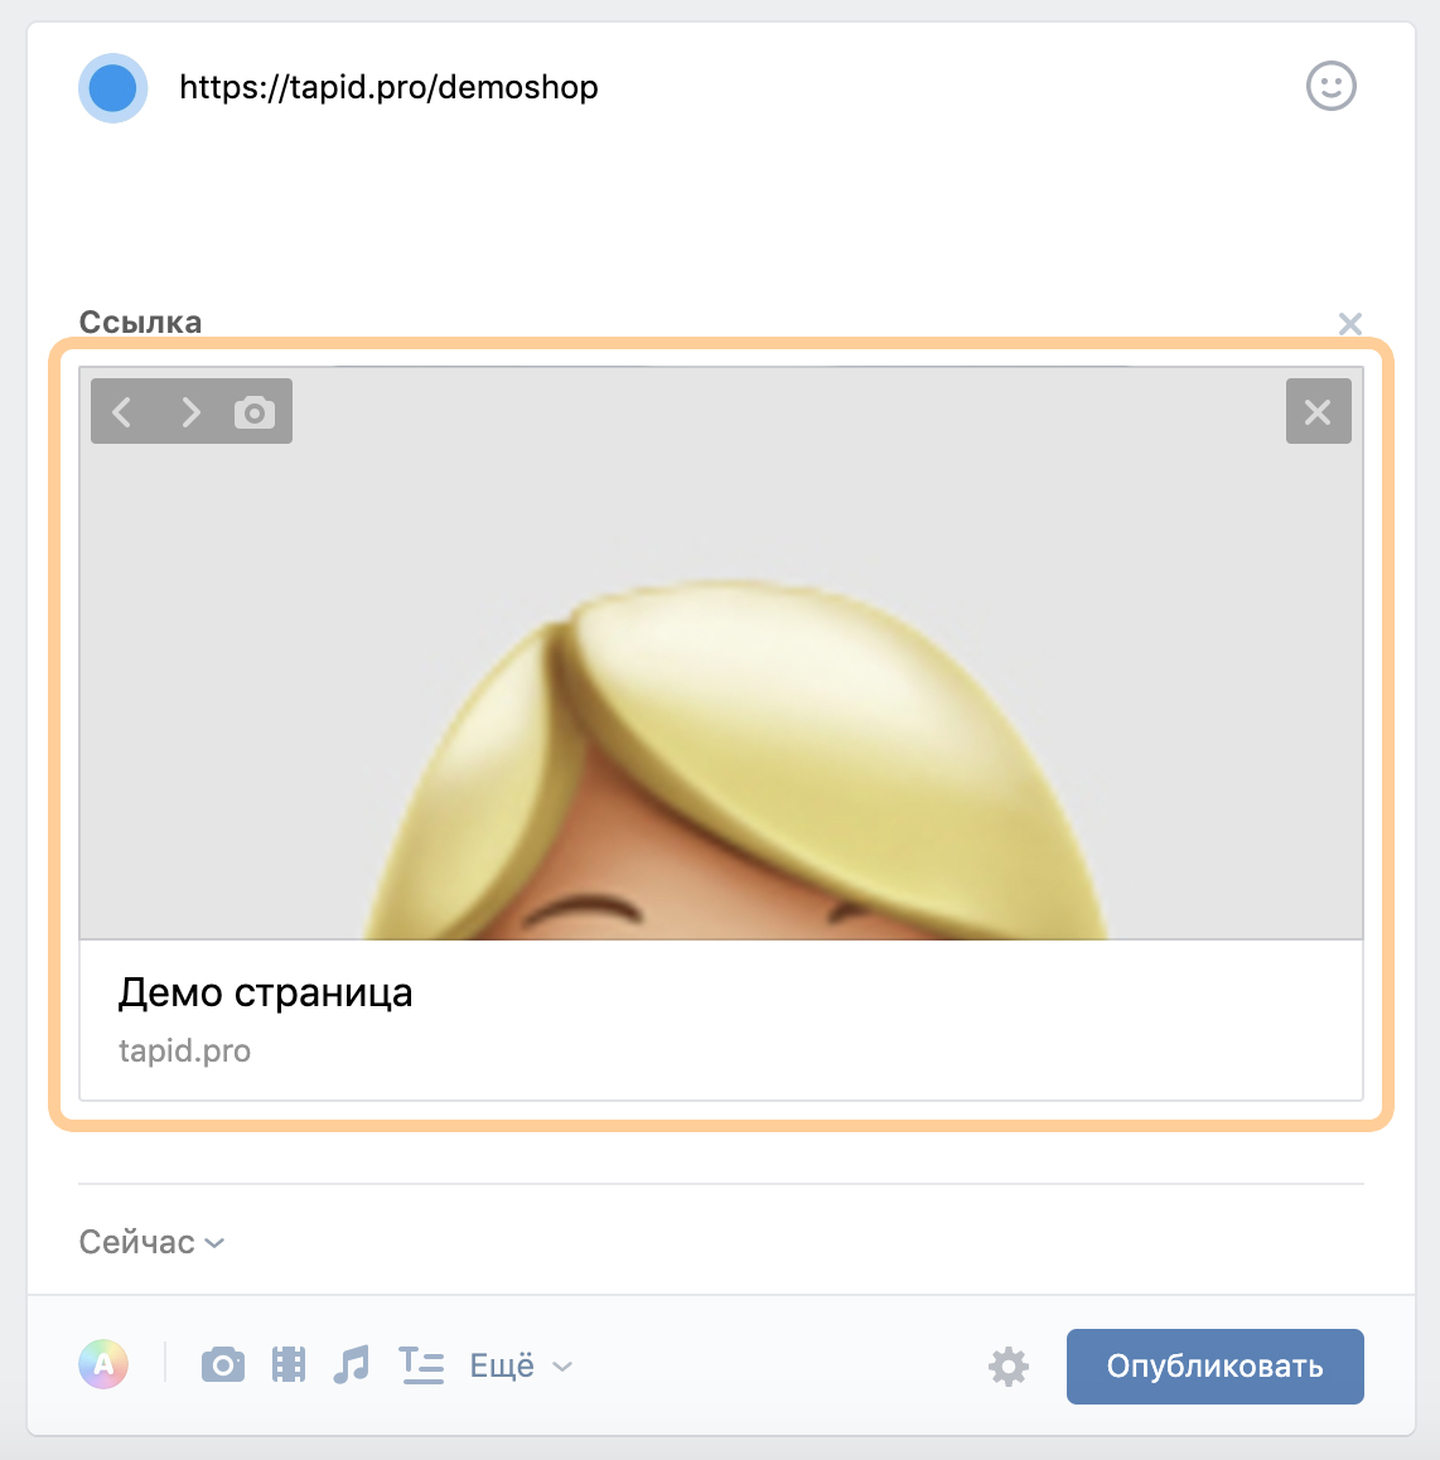 Превью ссылки в социальной сети ВКонтакте